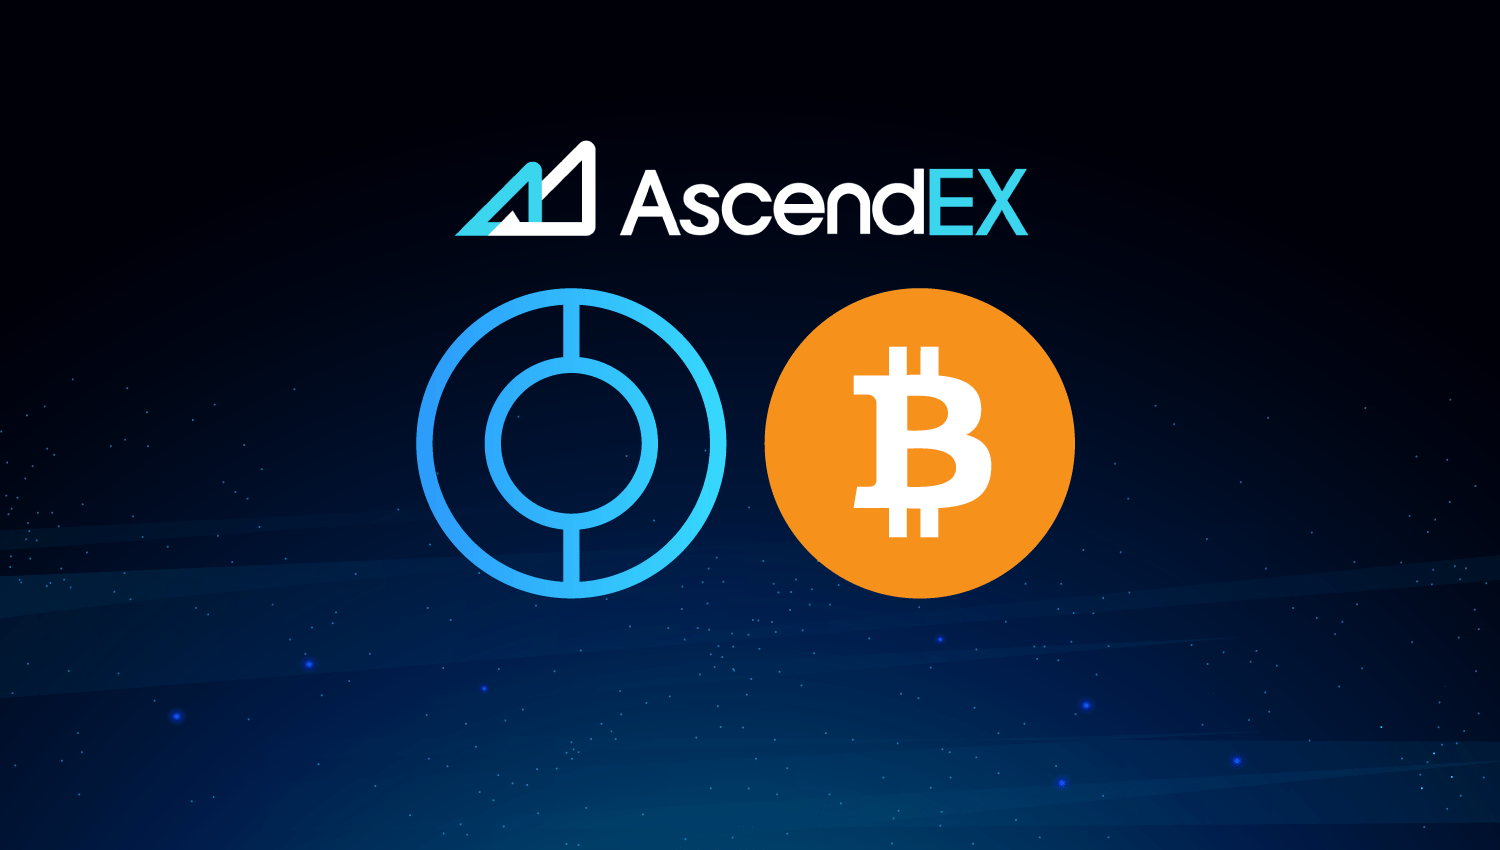 AscendEX adds the CUDOS/BTC trading pair!